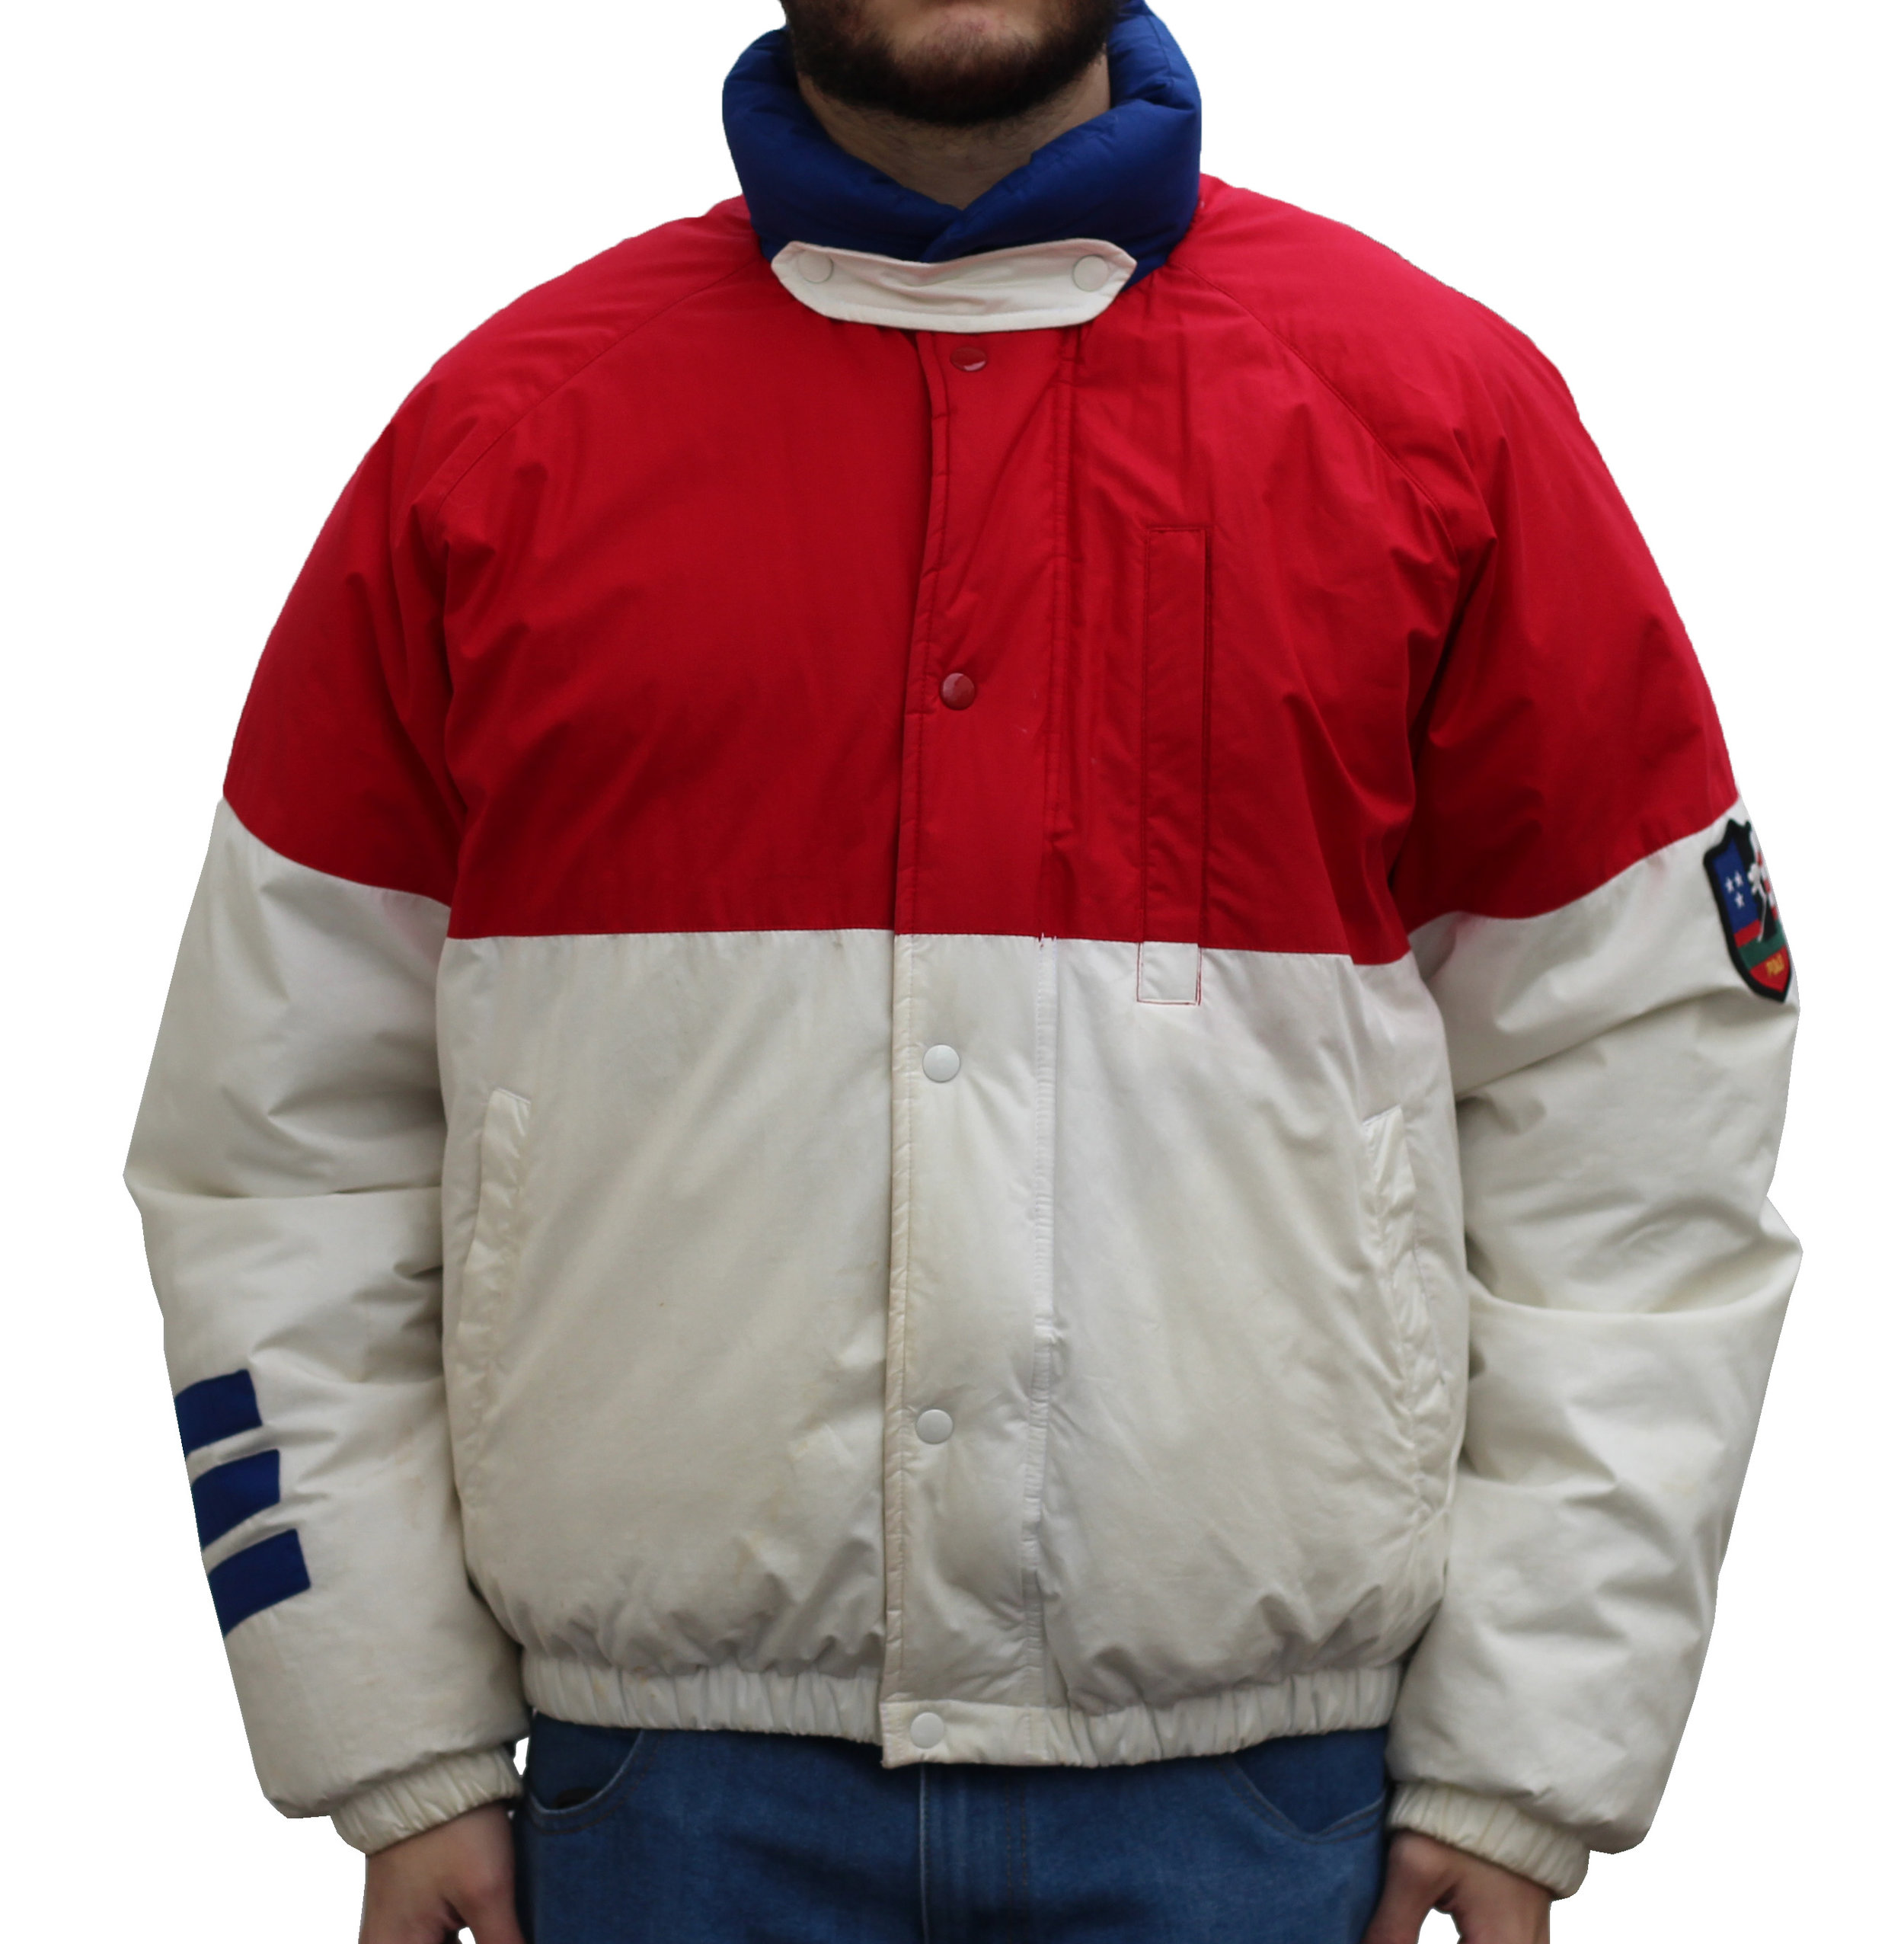 vintage polo ski jacket